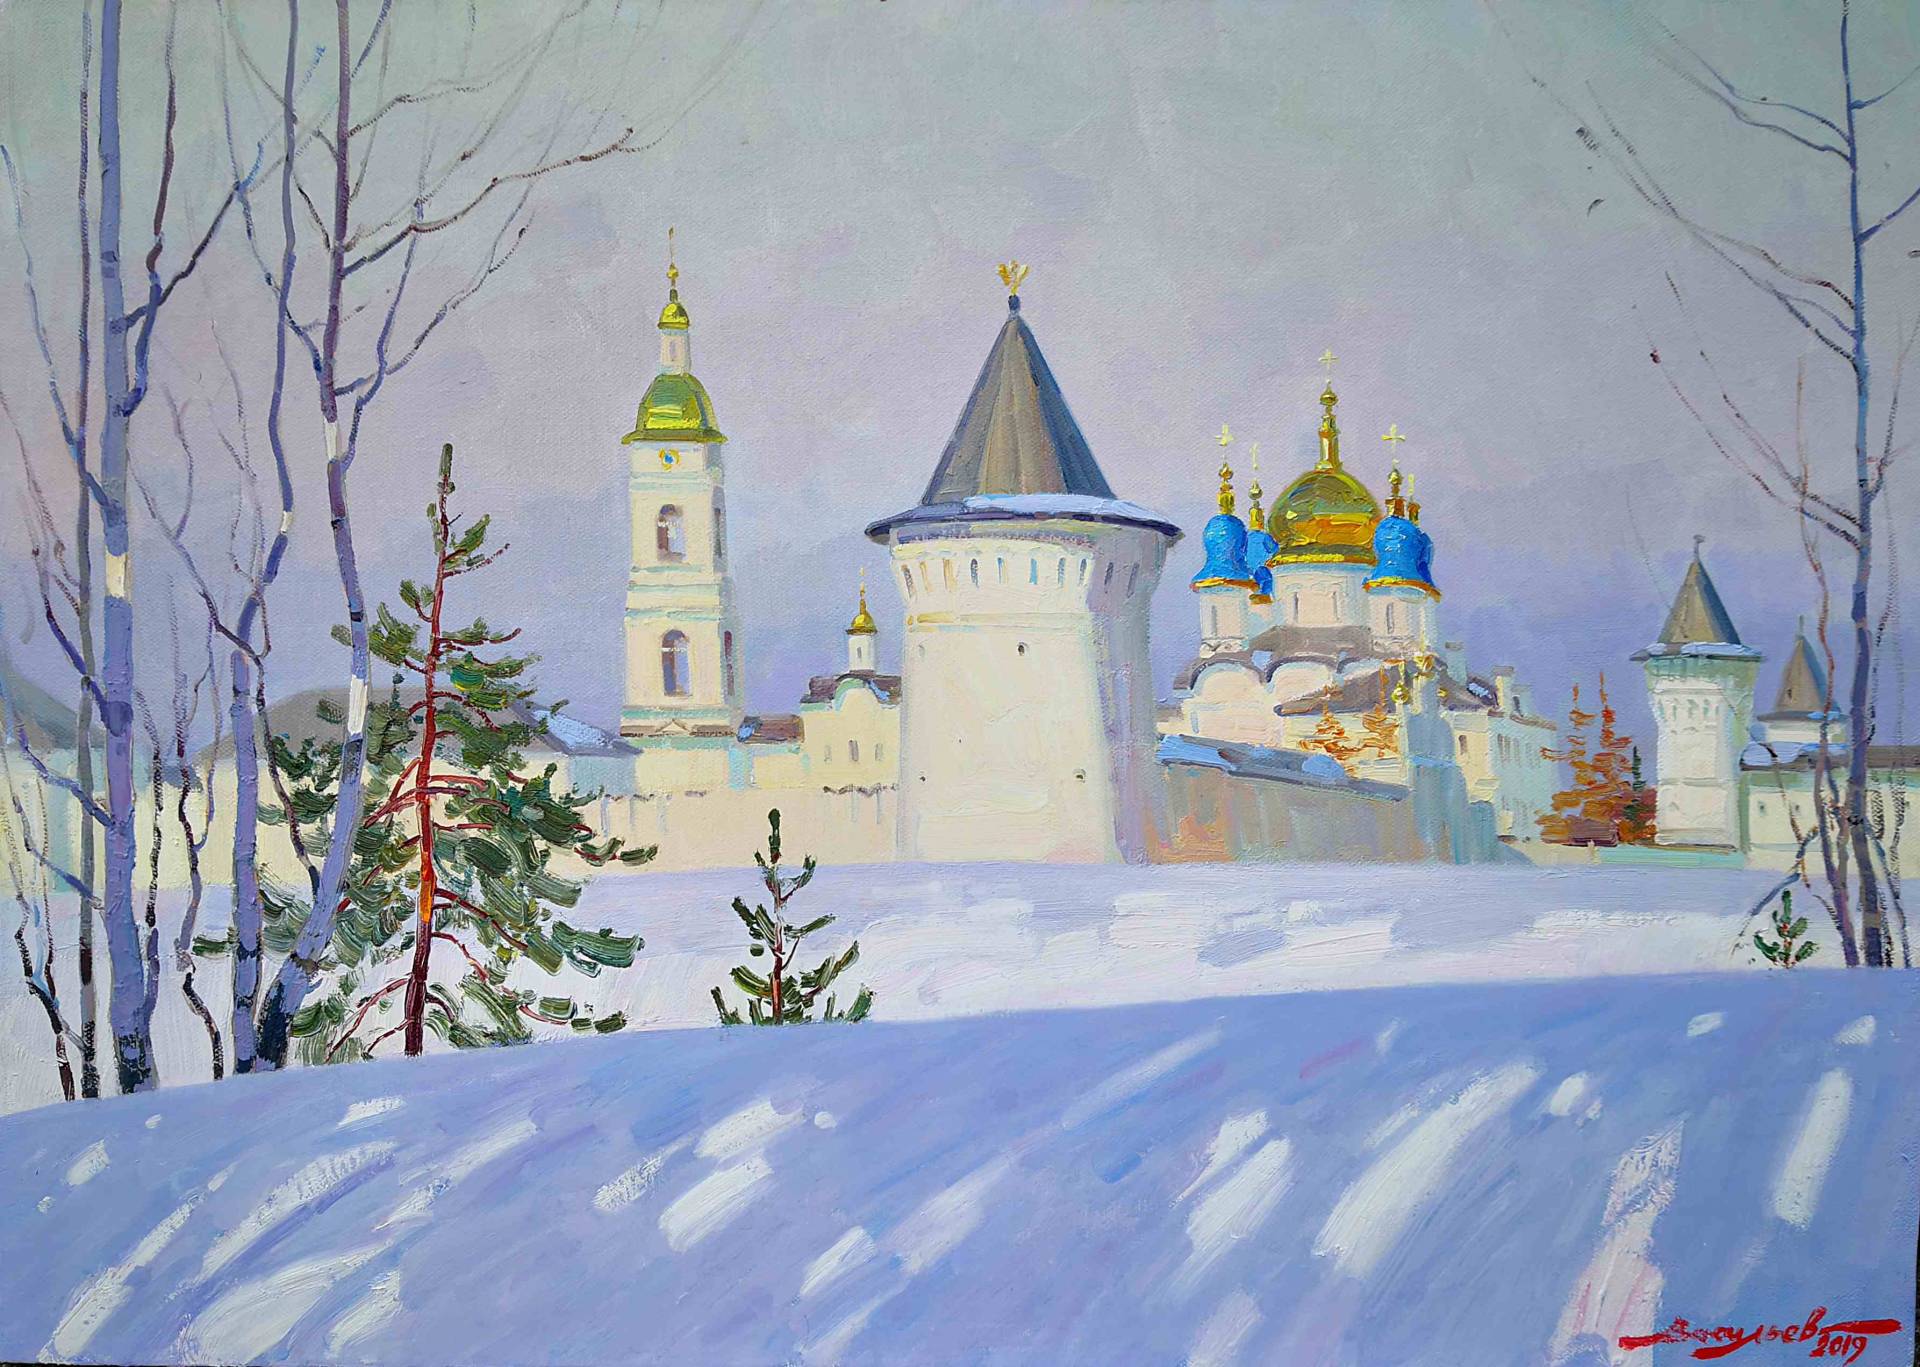 Siberian stronghold, Dmitry Vasiliev, Buy the painting Oil